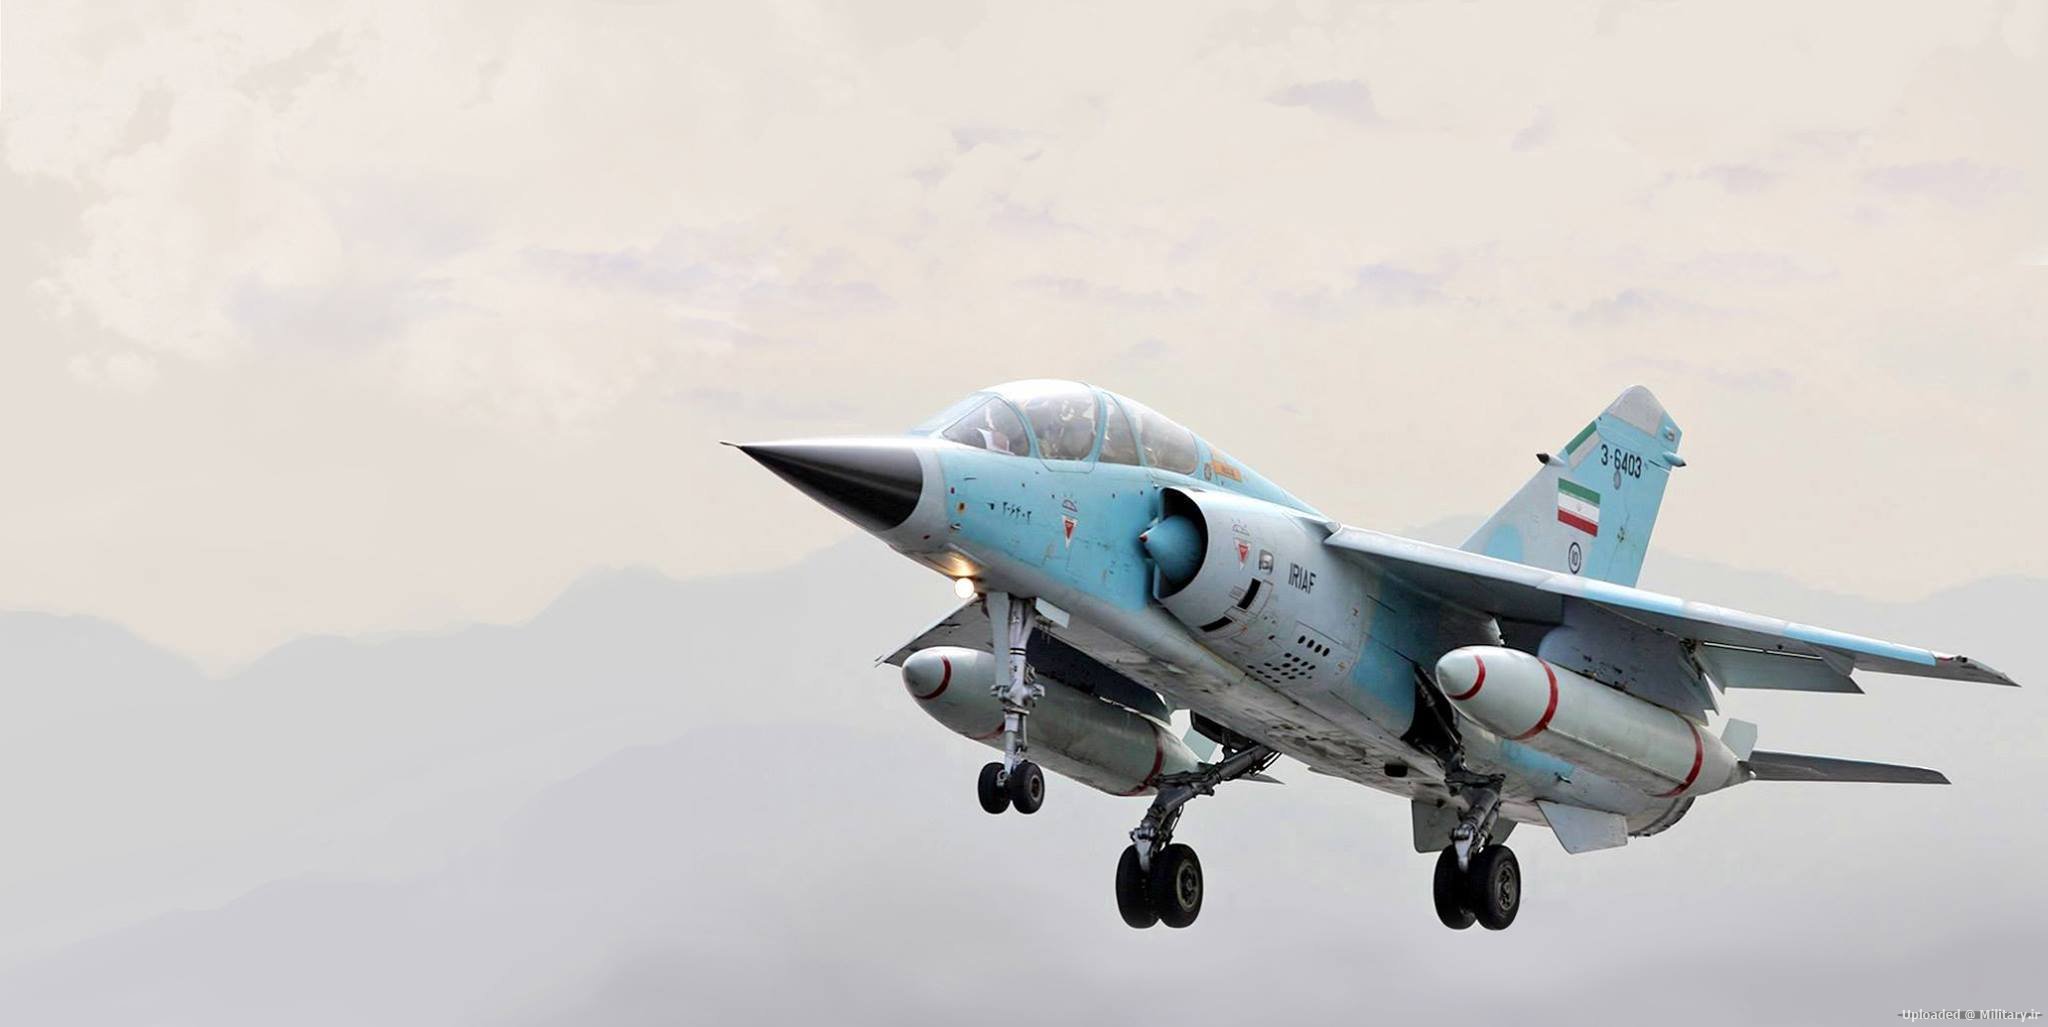 Mirages F.1 iranianos agora com novo sistema de geração de oxigênio a bordo  - Cavok Brasil - Notícias de Aviação em Primeira Mão